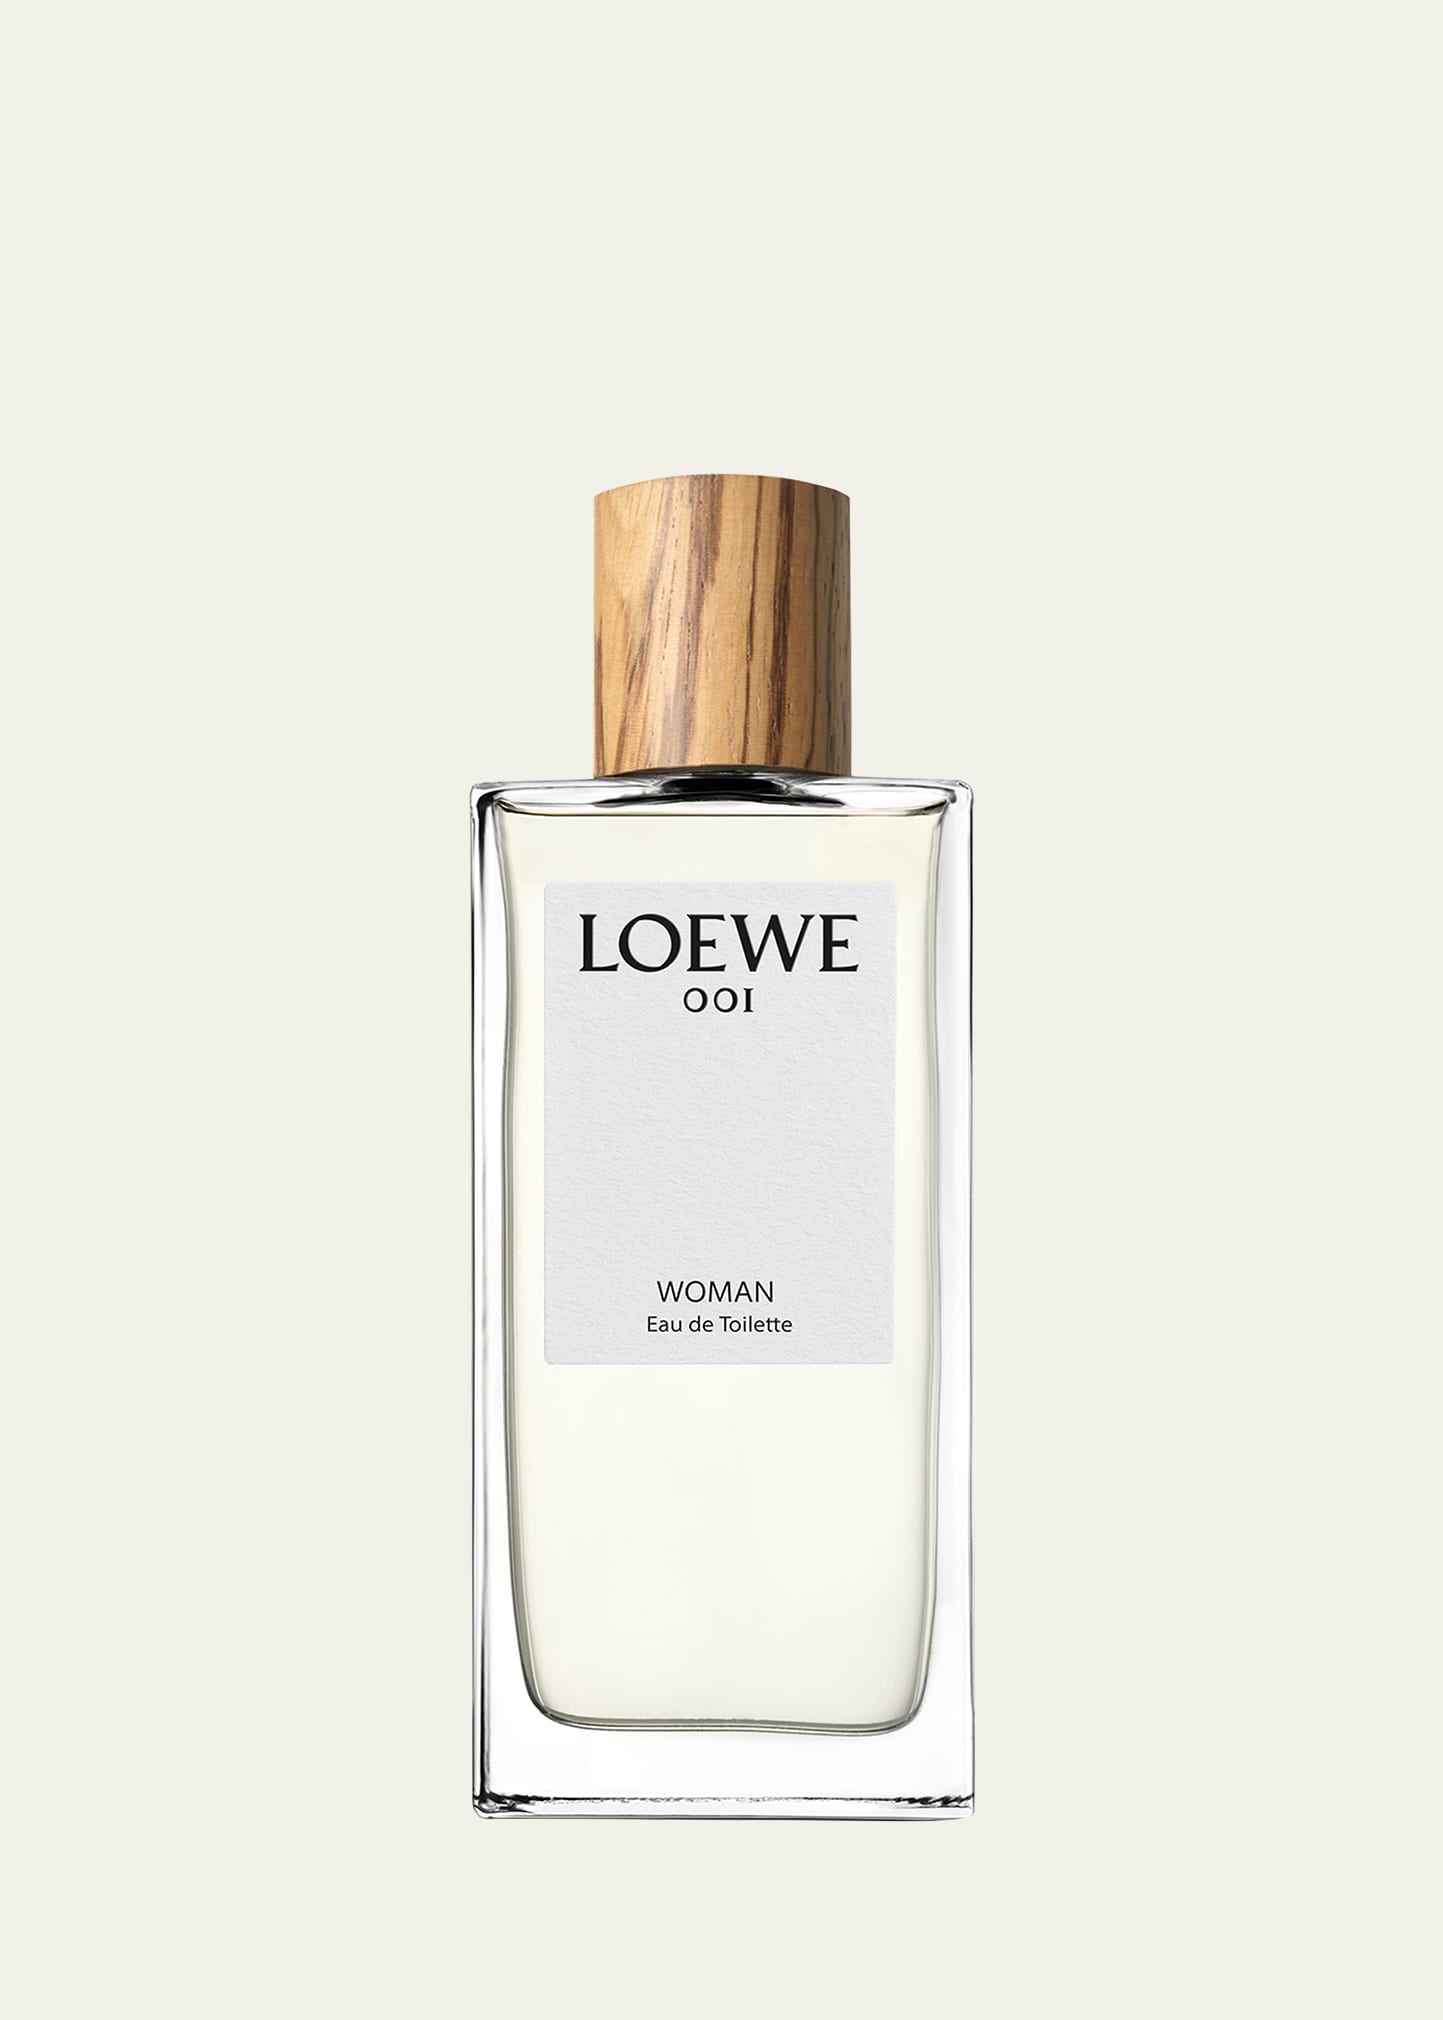 Loewe 001 Woman Eau de Toilette - 100ml